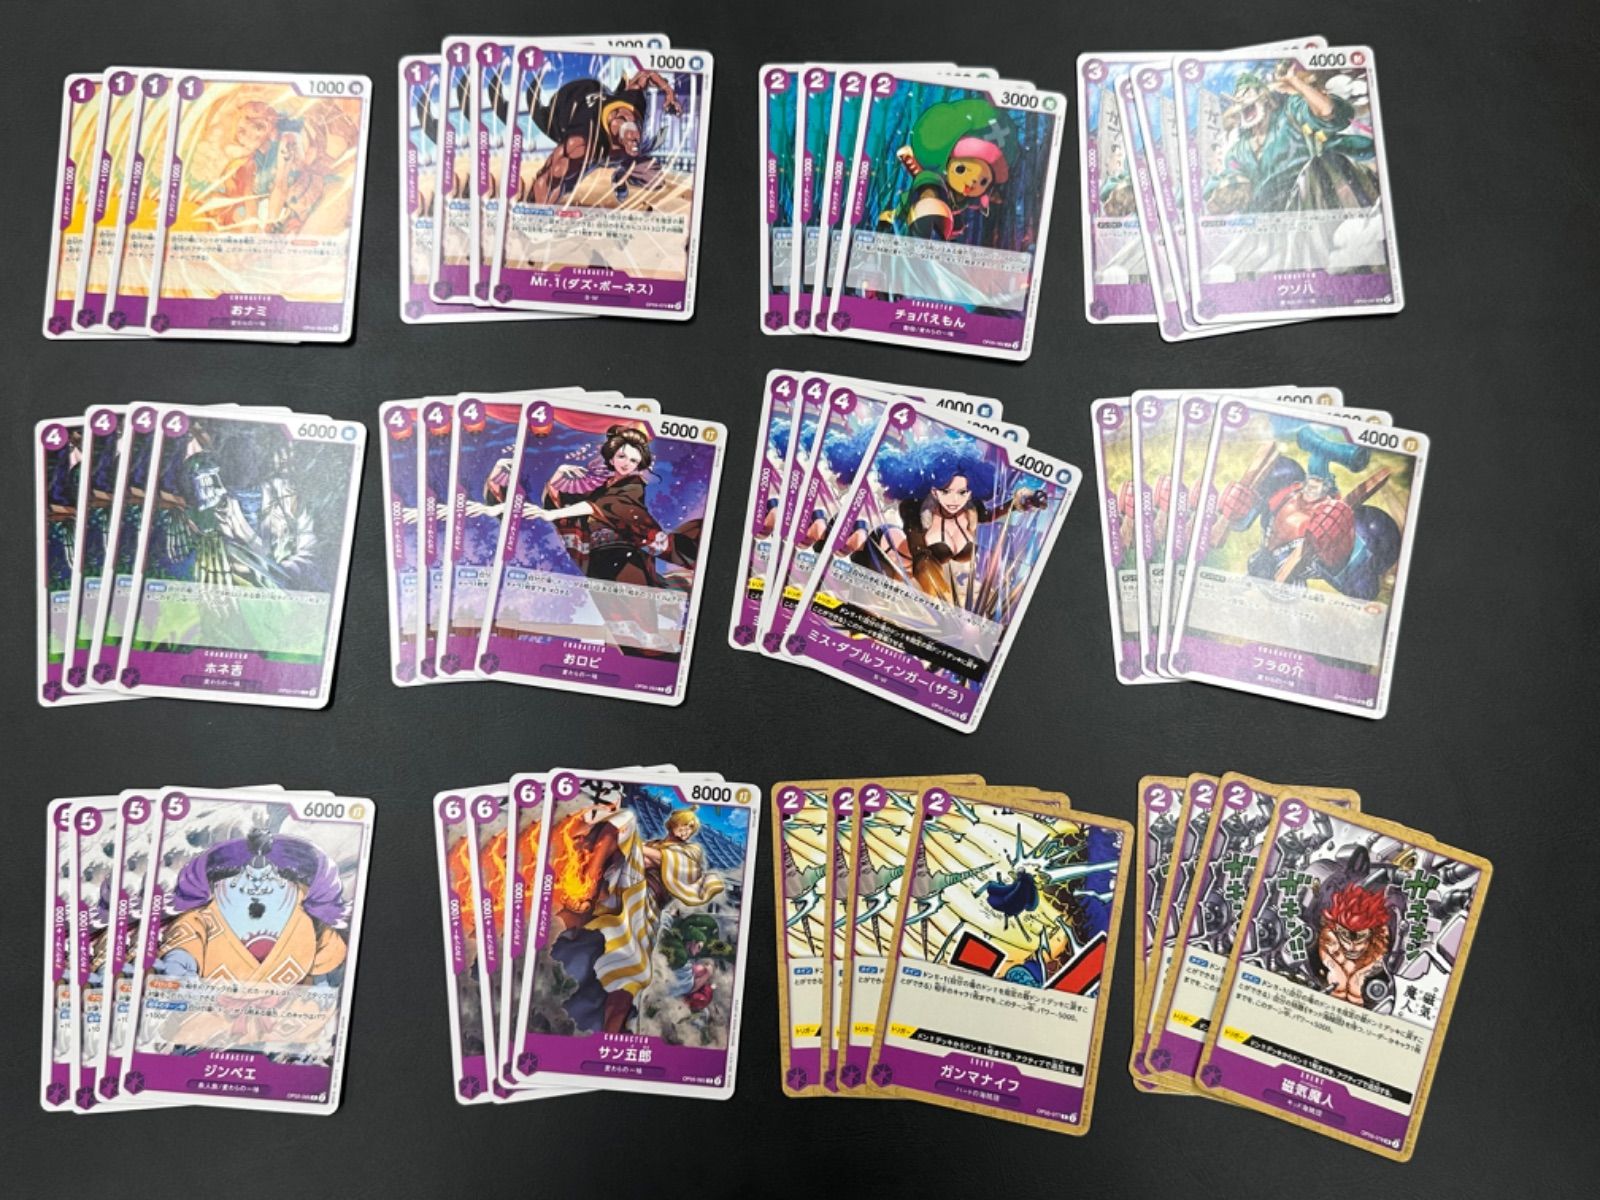 ワンピースカード 新時代の主役 紫 R以下 4コン - 山ちゃん カード 